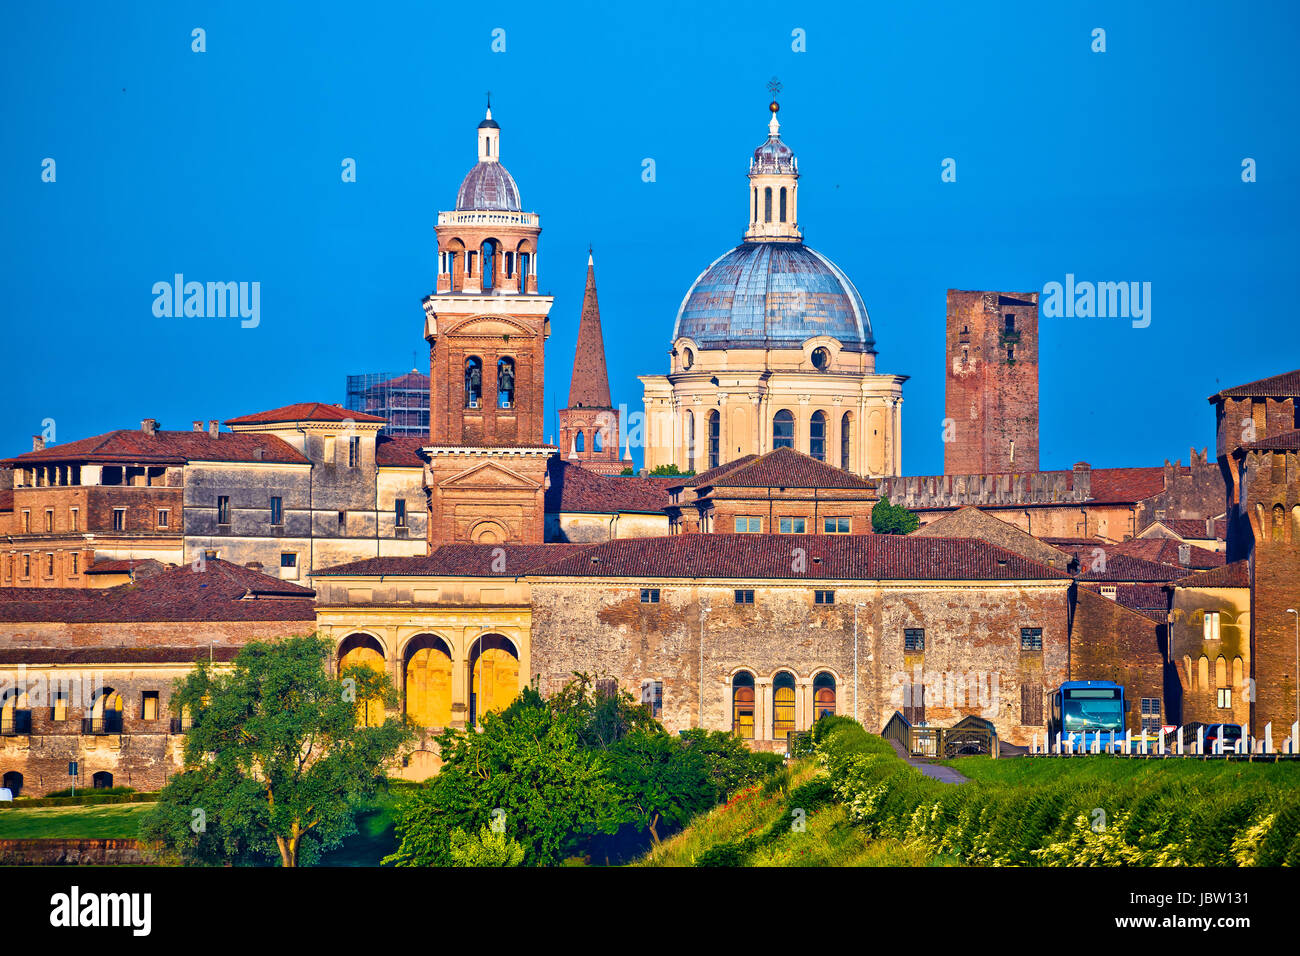 Ville de Mantoue vue sur l'horizon, capitale européenne de la culture et de l'UNESCO World Heritage site, région Lombardie Italie Banque D'Images